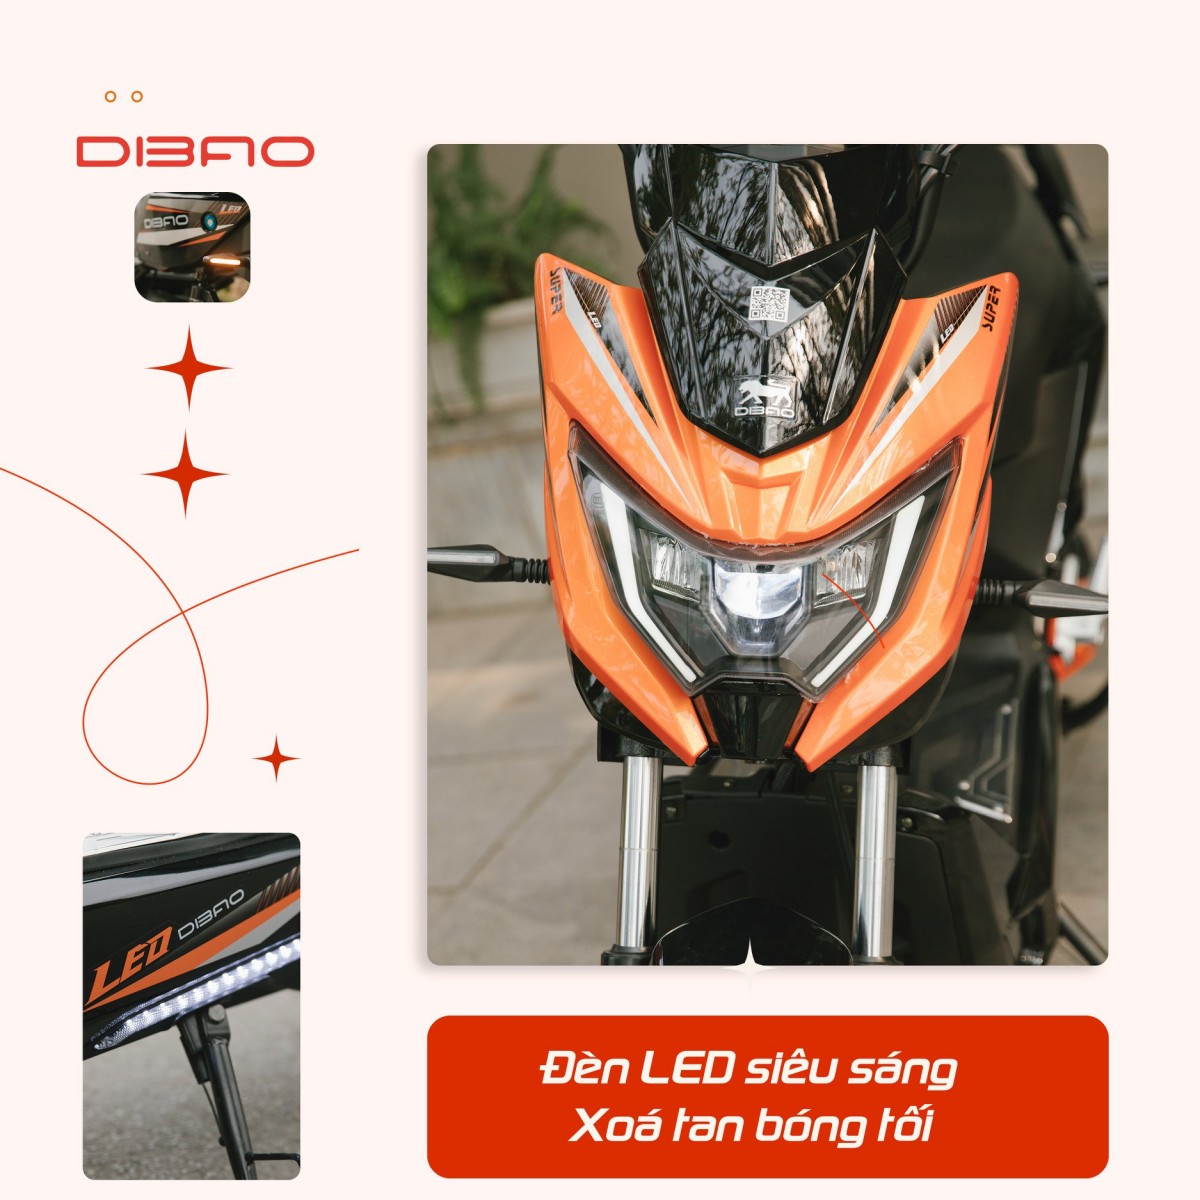 Sự tinh tế trong thiết kế xe máy điện Xmen Neo Dibao 2021